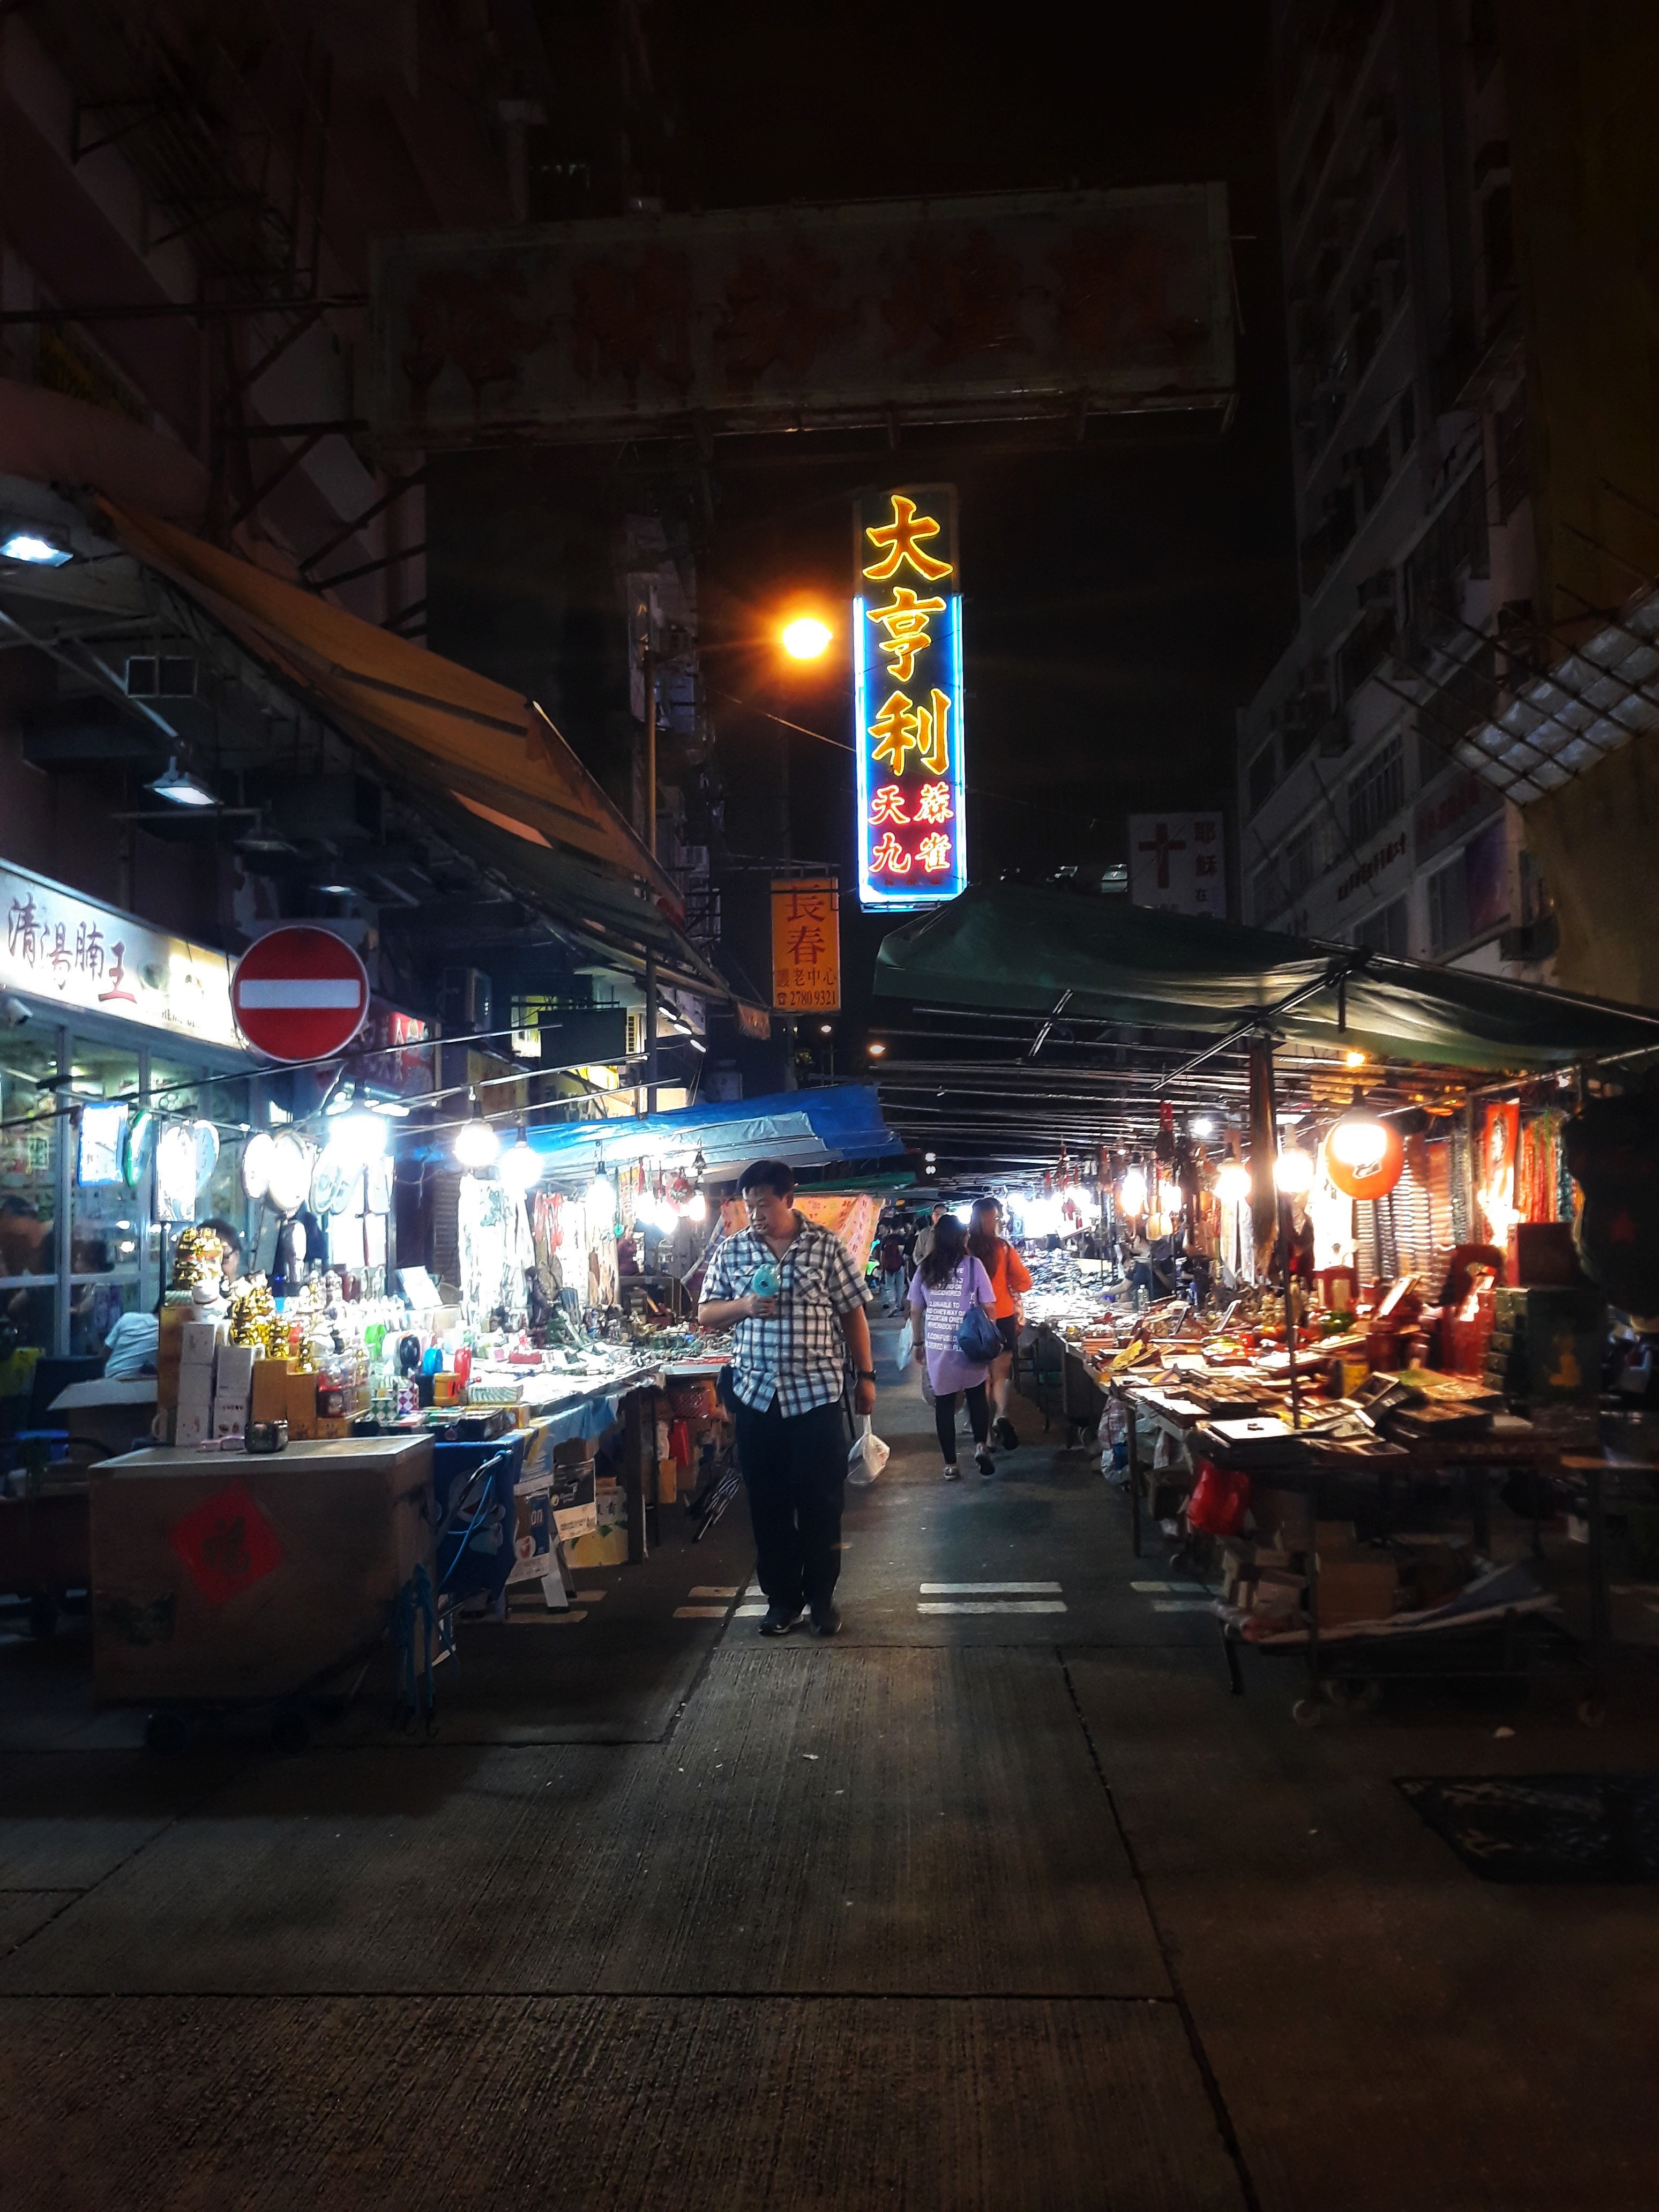 Hong Kong street market at night